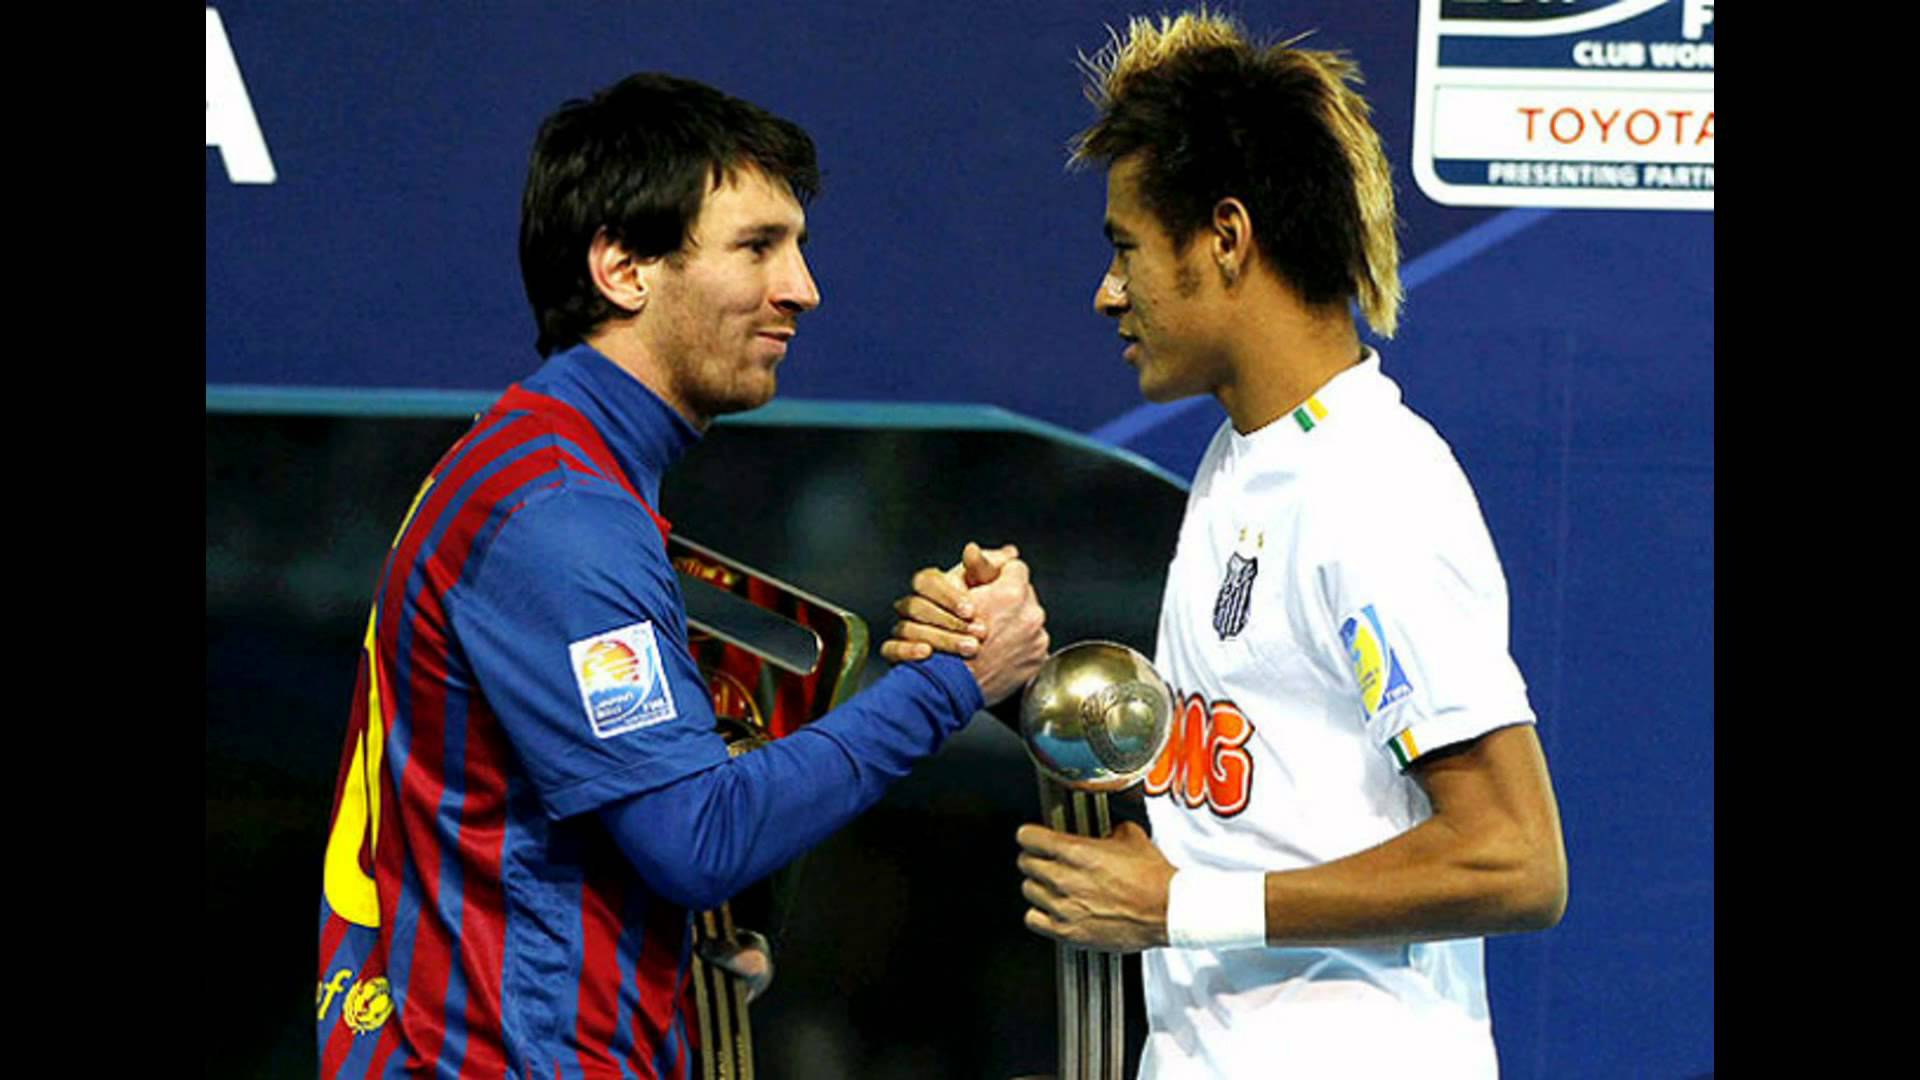 Neymar Vs Messi Wallpaper Ing Image For